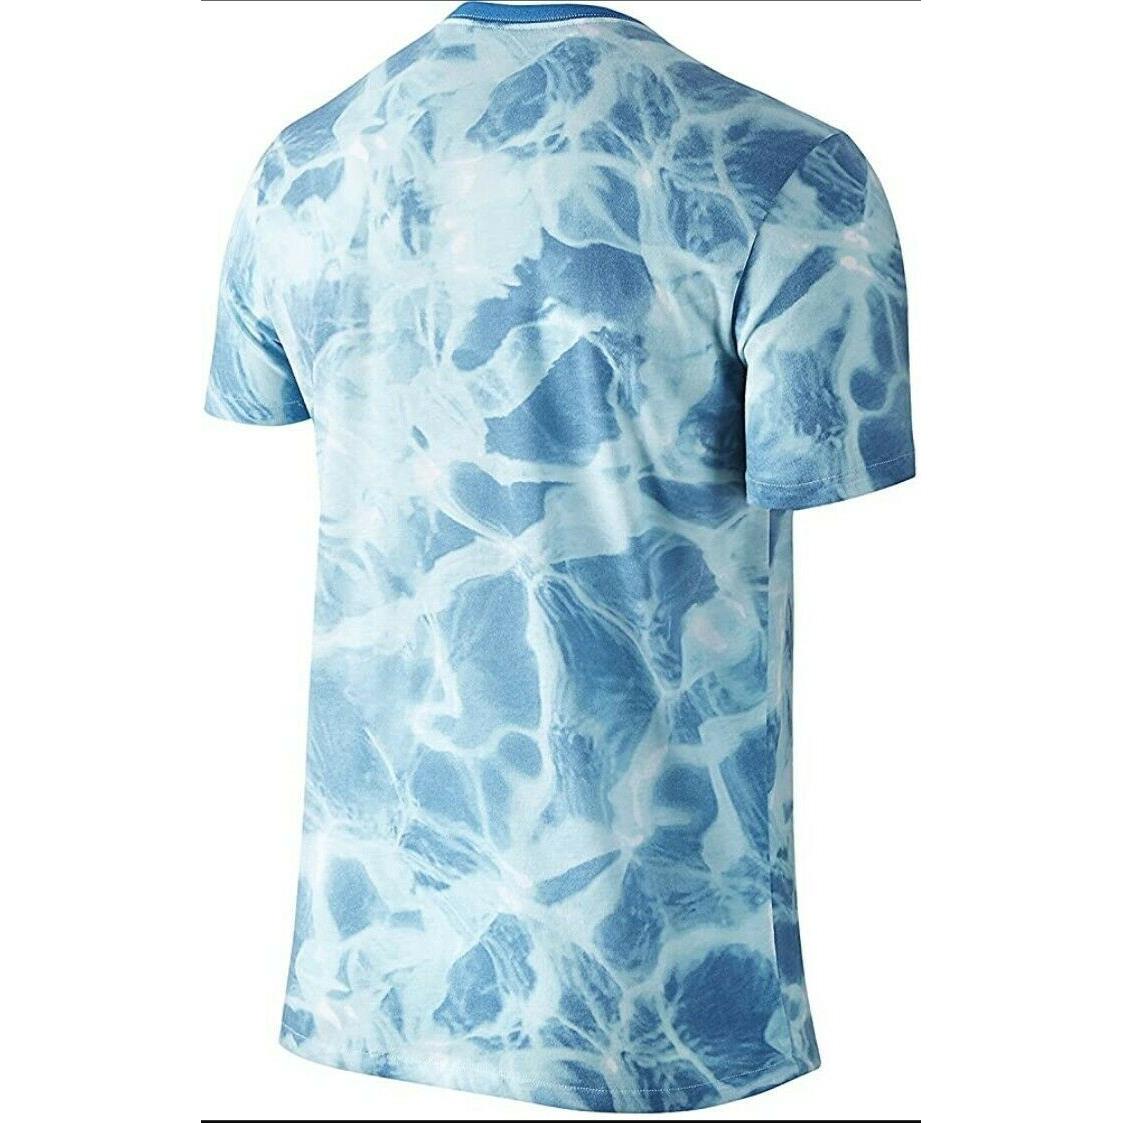 Men`s Nike Kobe Sheath Logo 5am Flight T-shirt 698697 Tie Dye Blue Wave SZ L